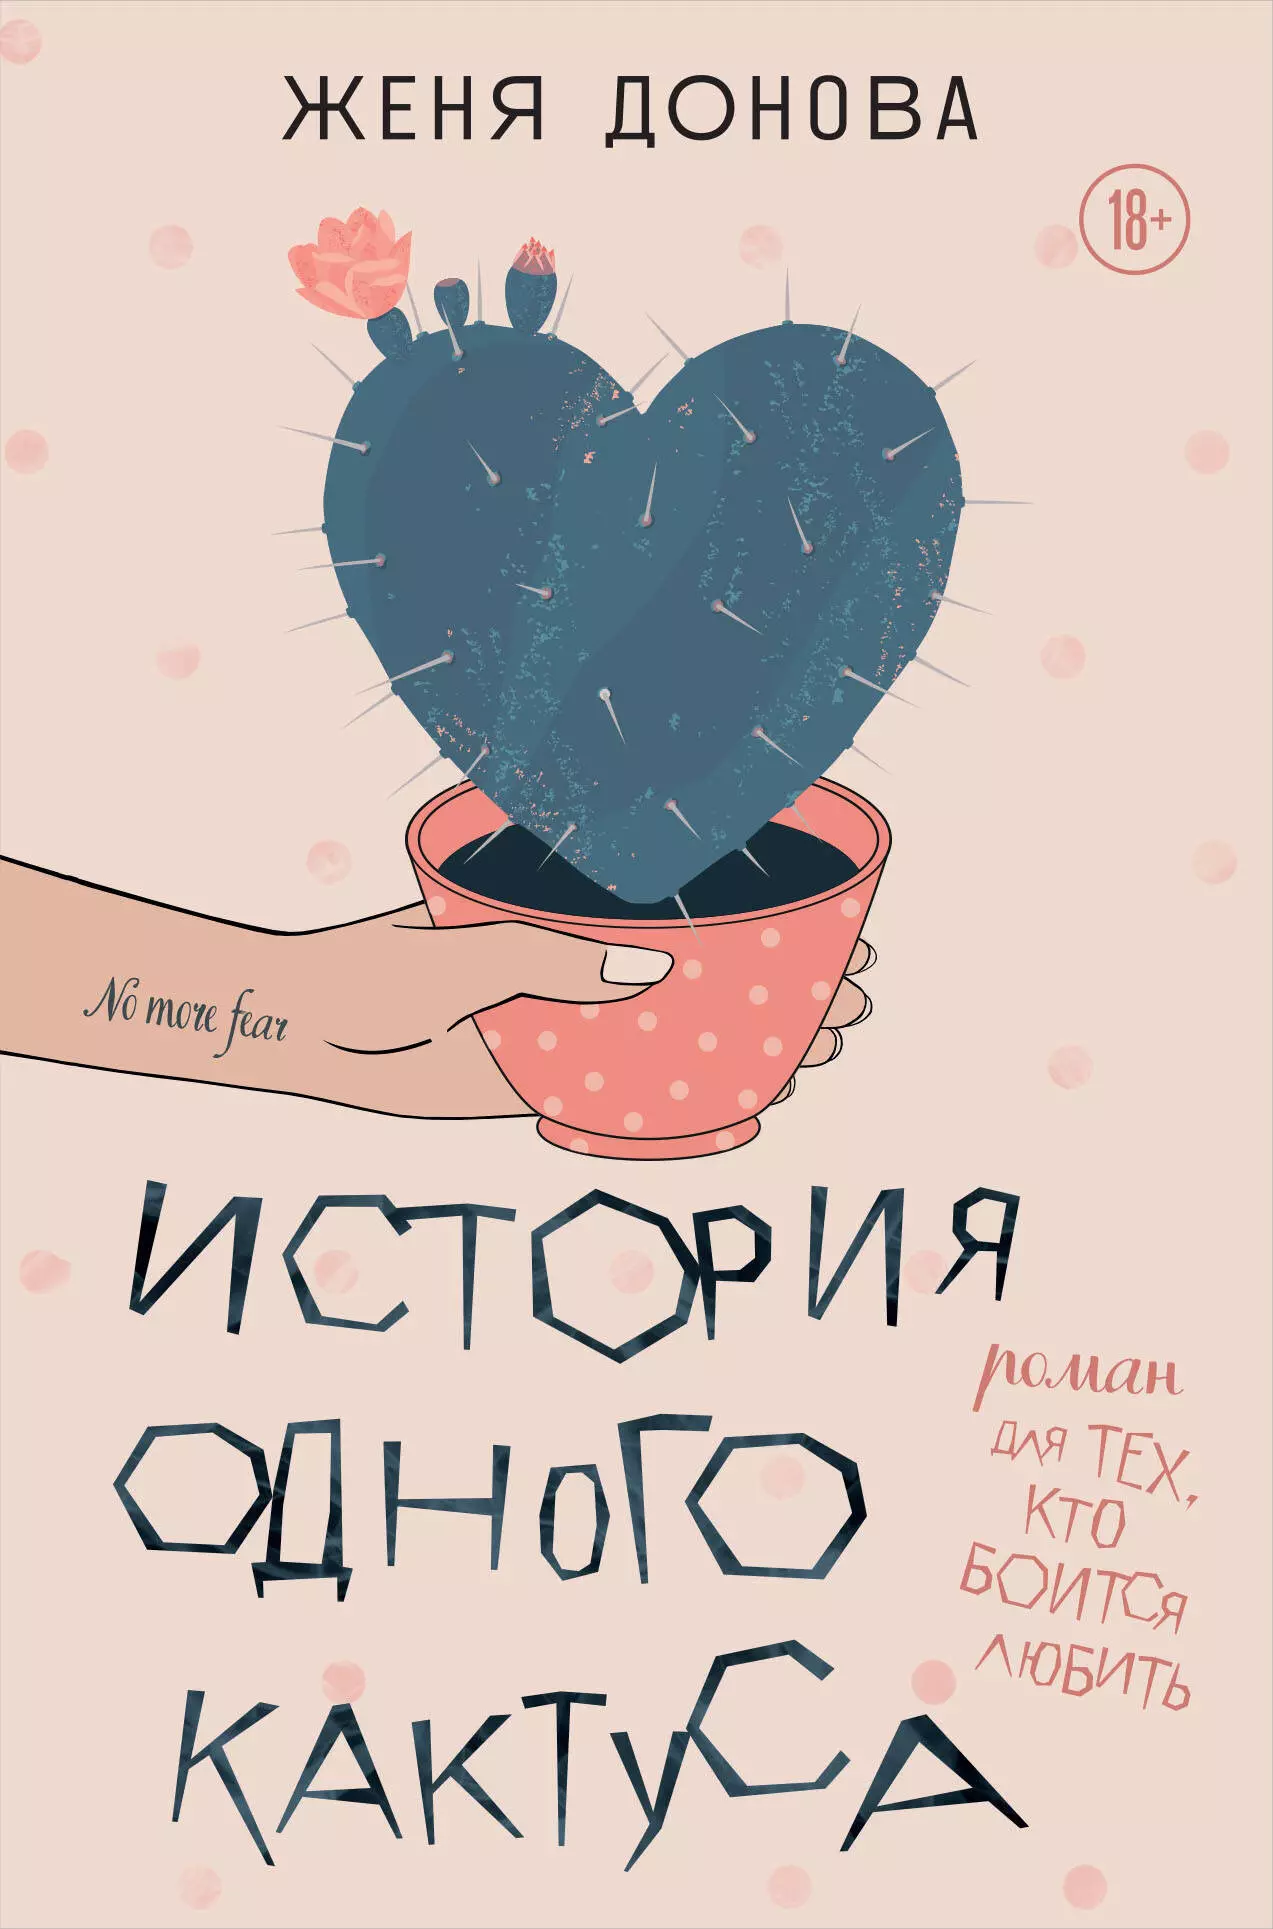 Донова Евгения Владимировна История одного кактуса: роман для тех, кто боится любить